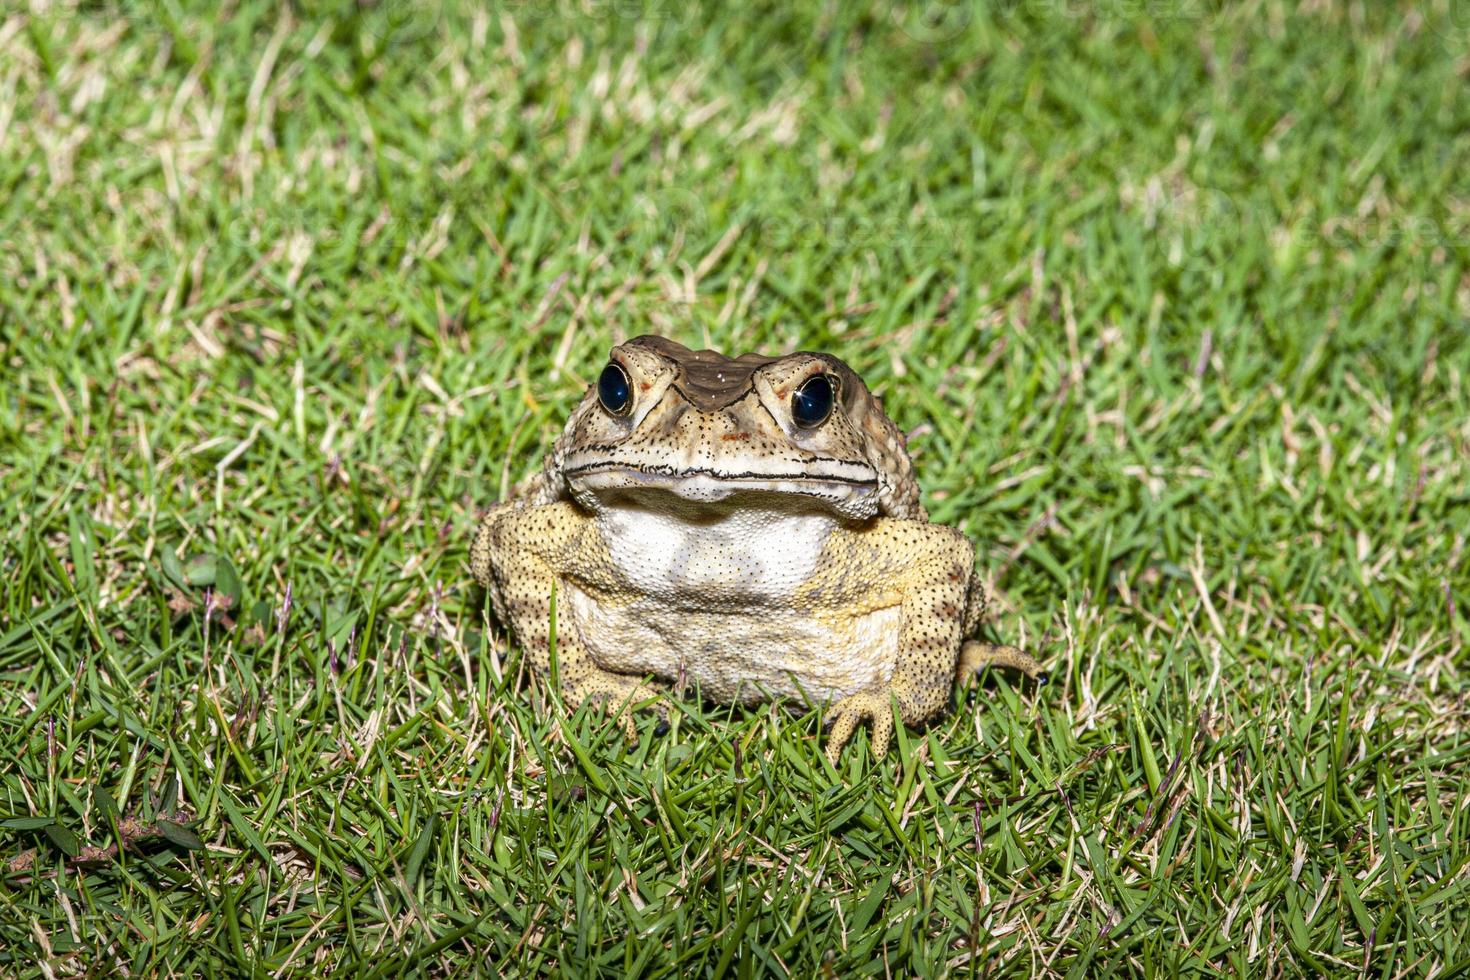 afbeelding van kikker zittend in gras op zoek direct in camera foto